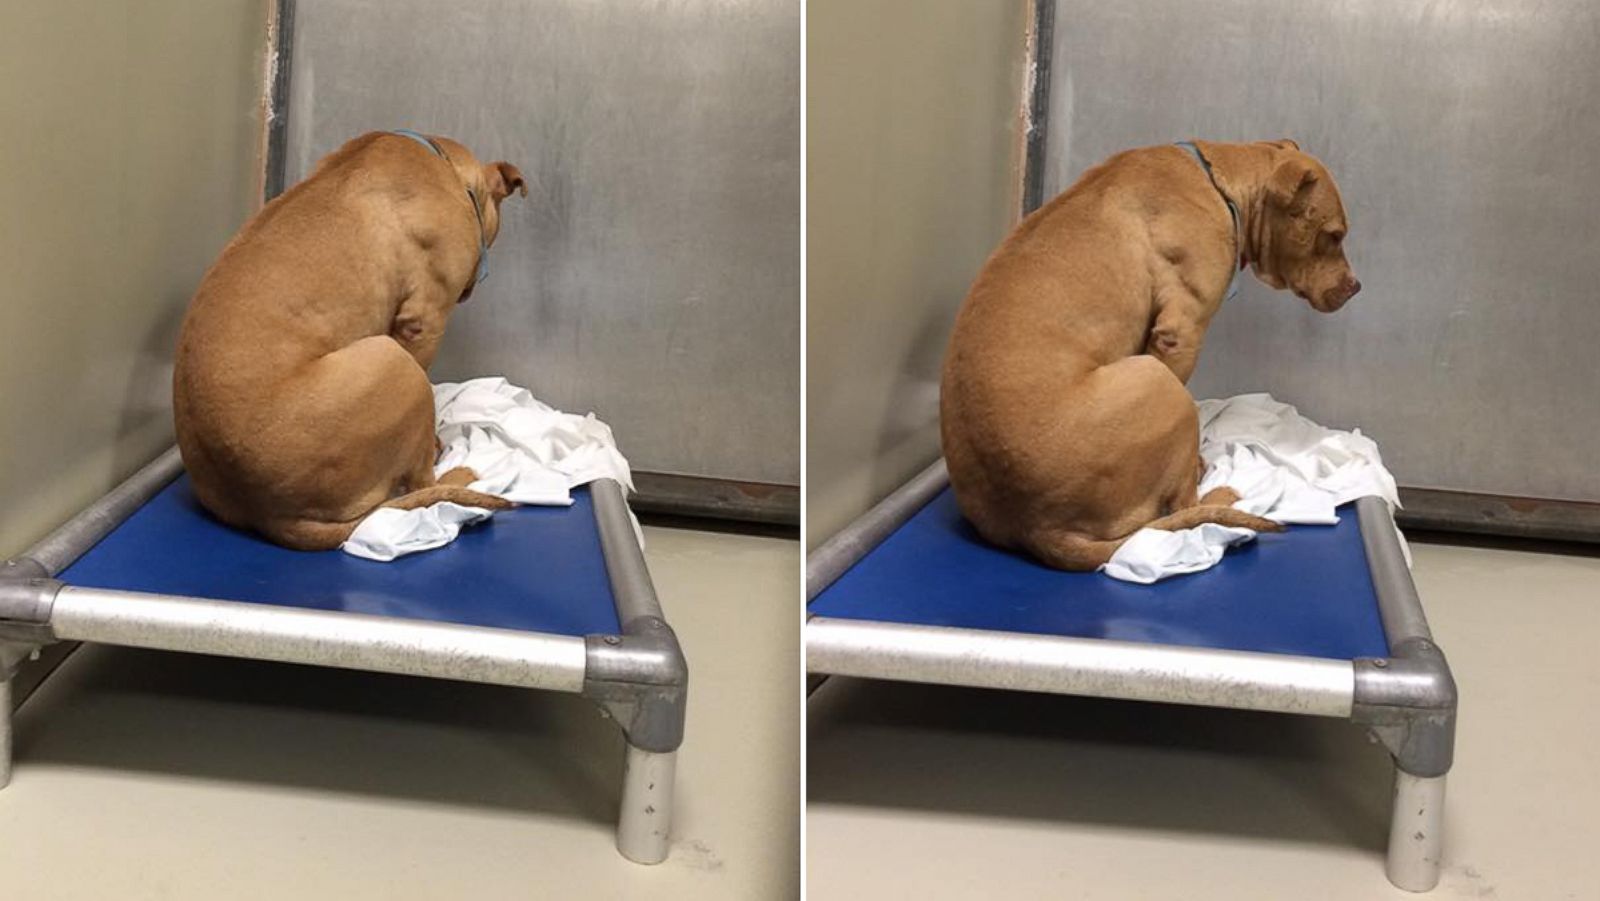 Photos of Sad Dog Inspire Hundreds of Adoption Inquiries - ABC News